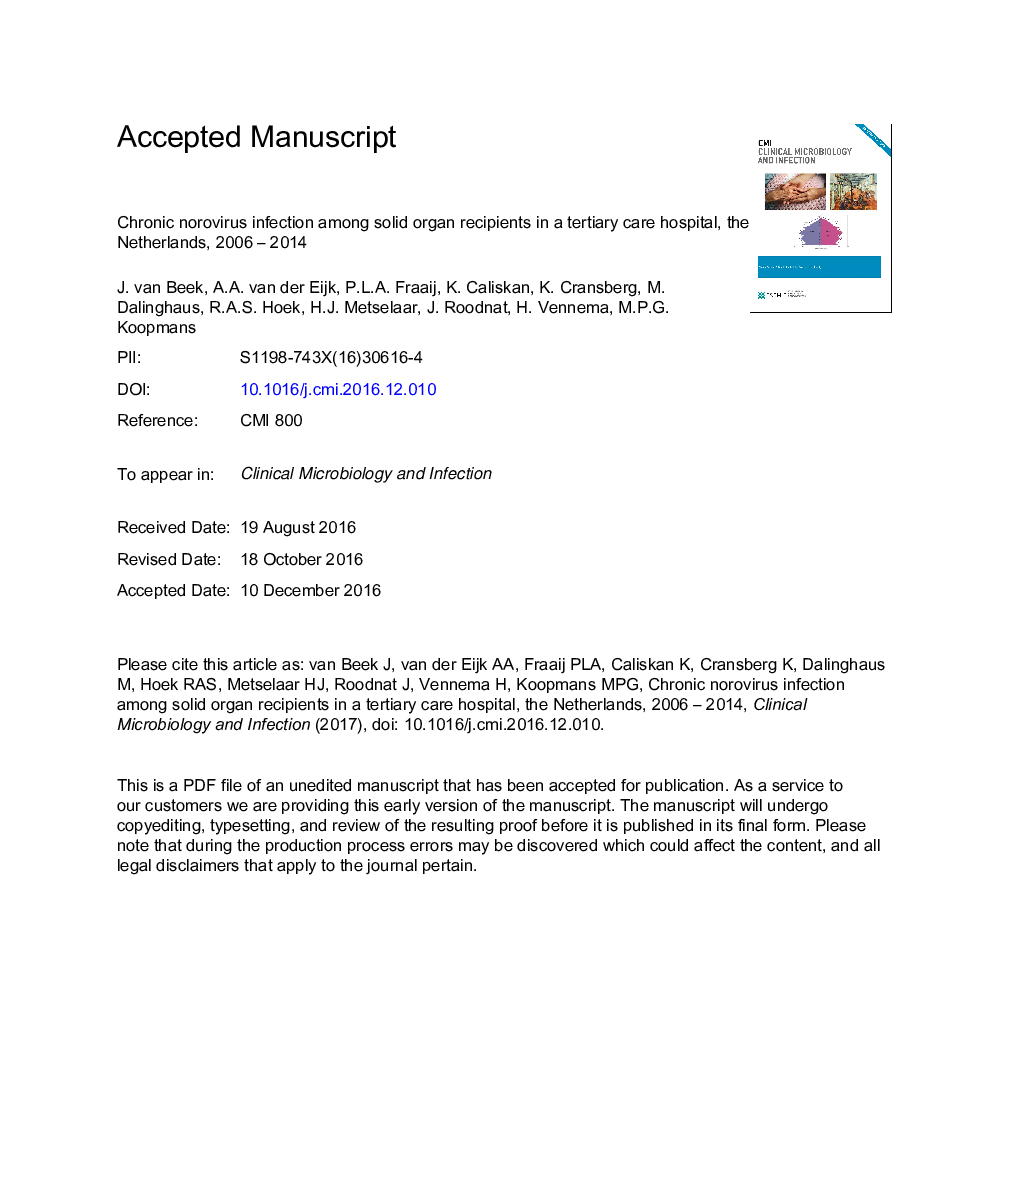 عفونت مزمن نئوویروس در میان گیرندگان عضو بدن در یک بیمارستان مراقبت از بیمارستانی، هلند، 2006-2014 